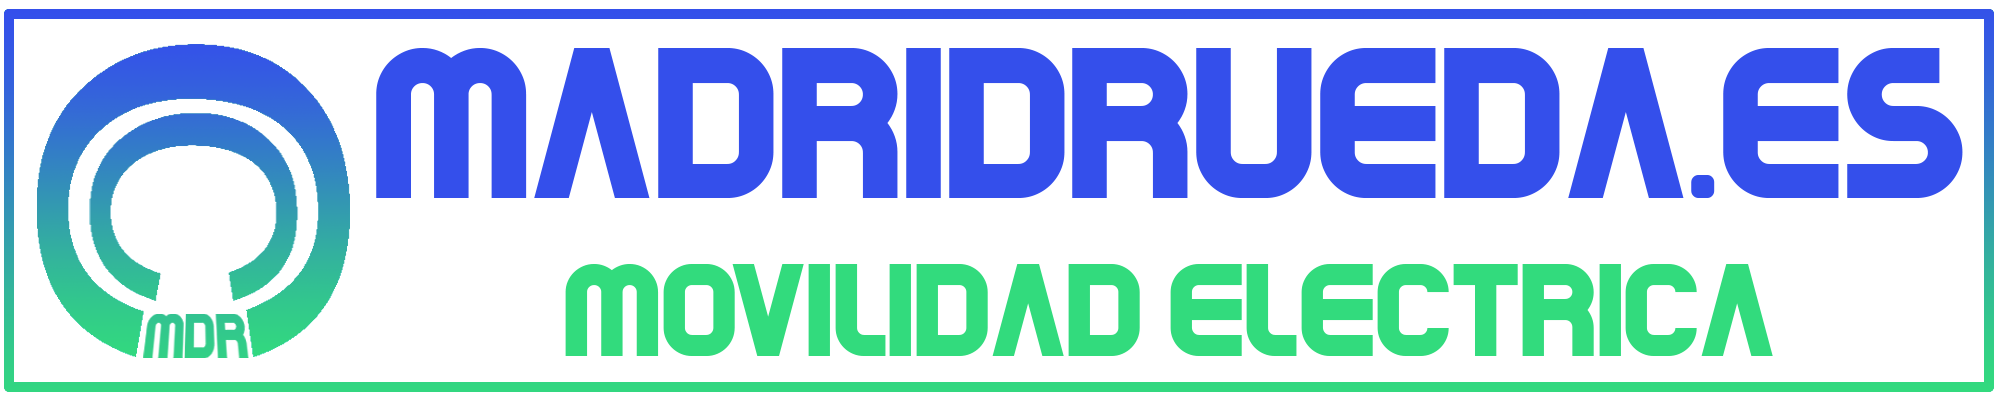 Madrid Rueda